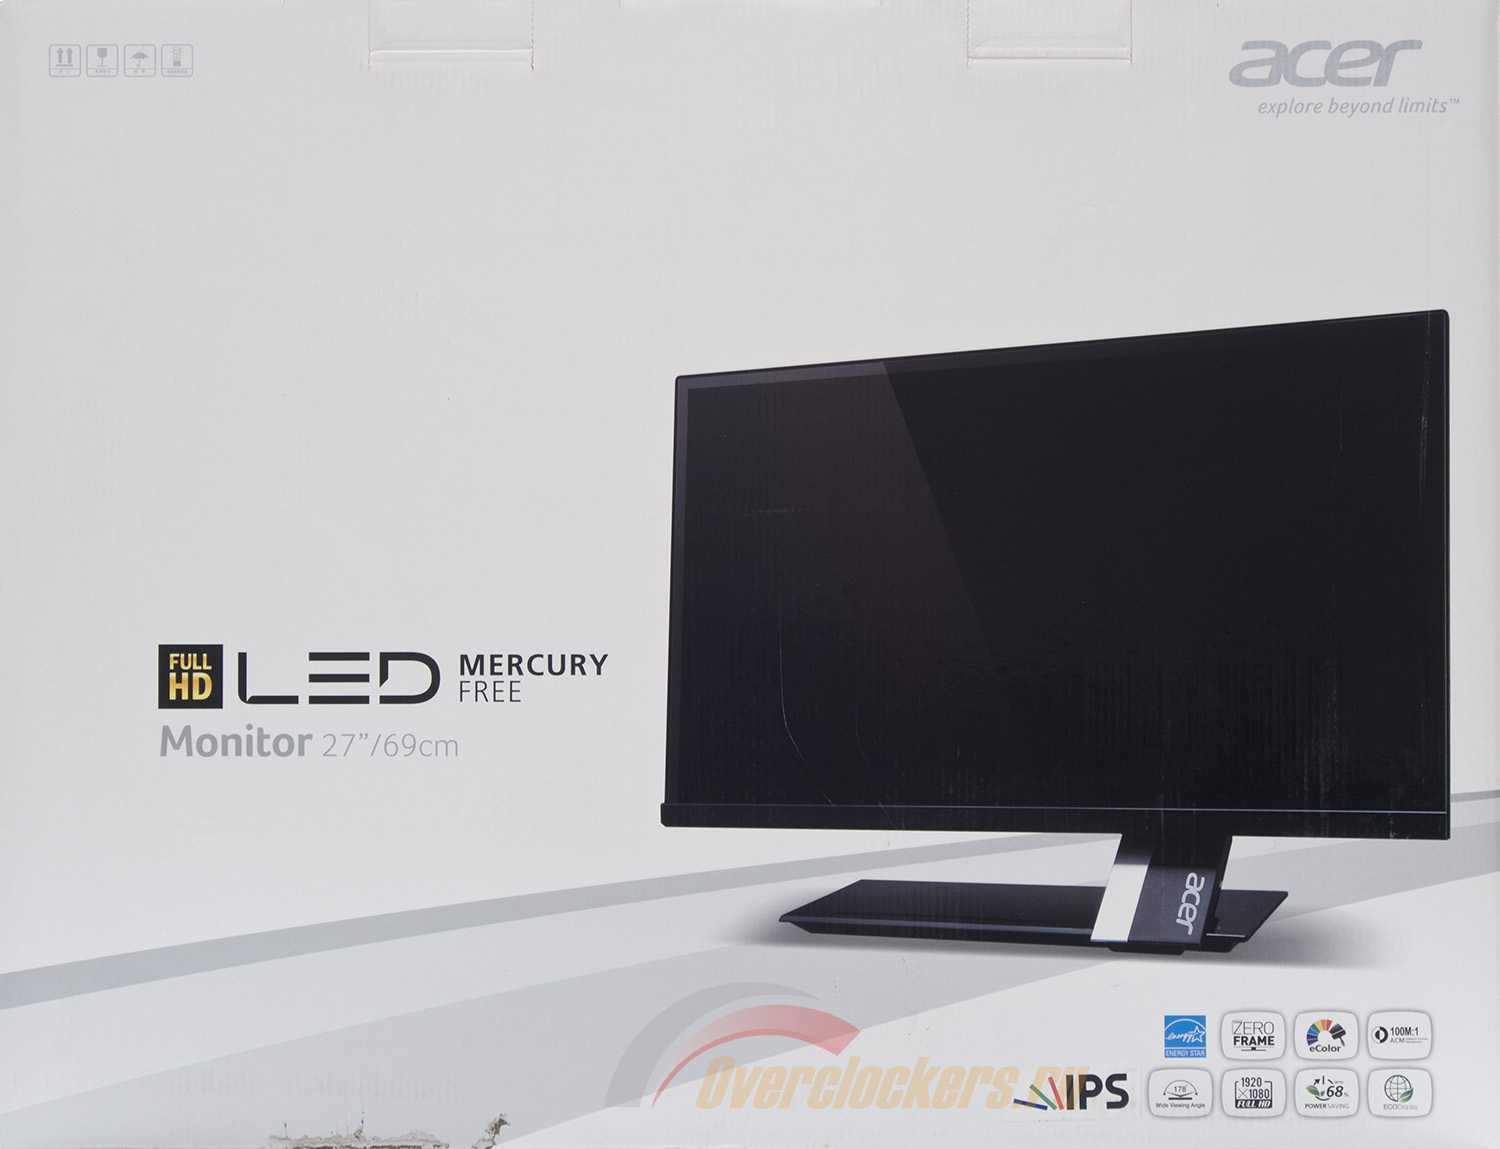 Монитор Acer S275HLbmii - подробные характеристики обзоры видео фото Цены в интернет-магазинах где можно купить монитор Acer S275HLbmii